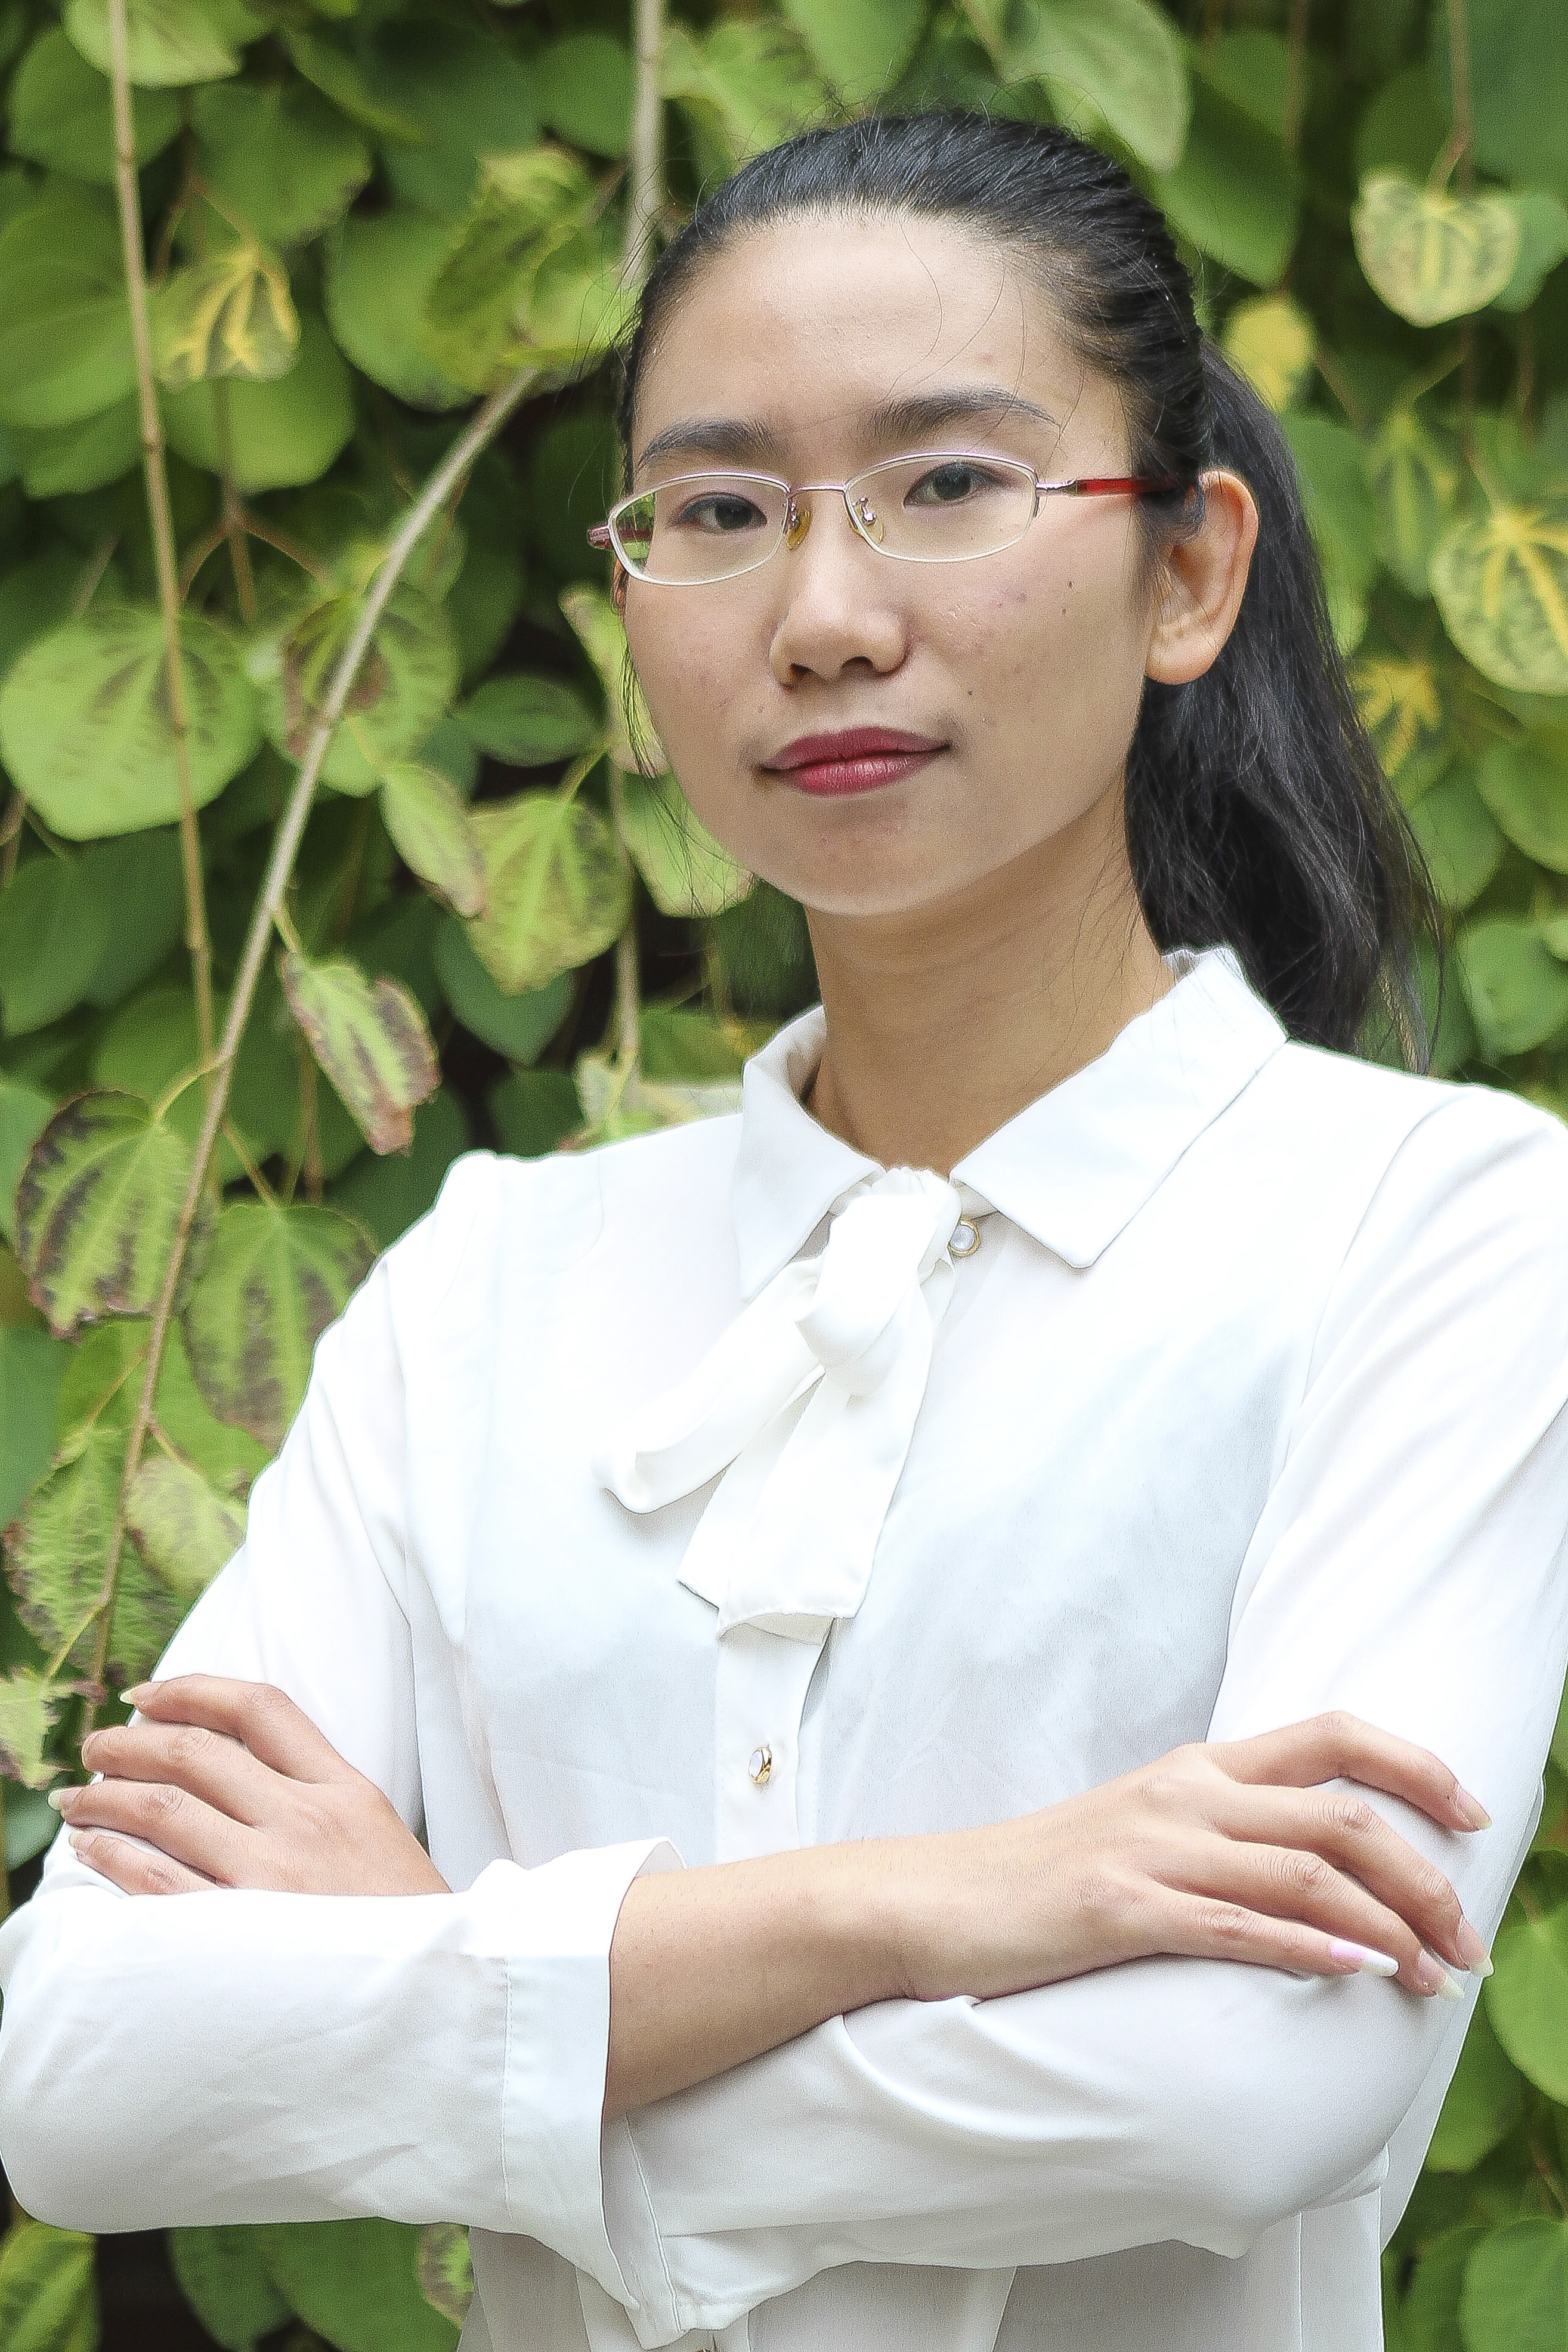 Dr. Shuai Xie